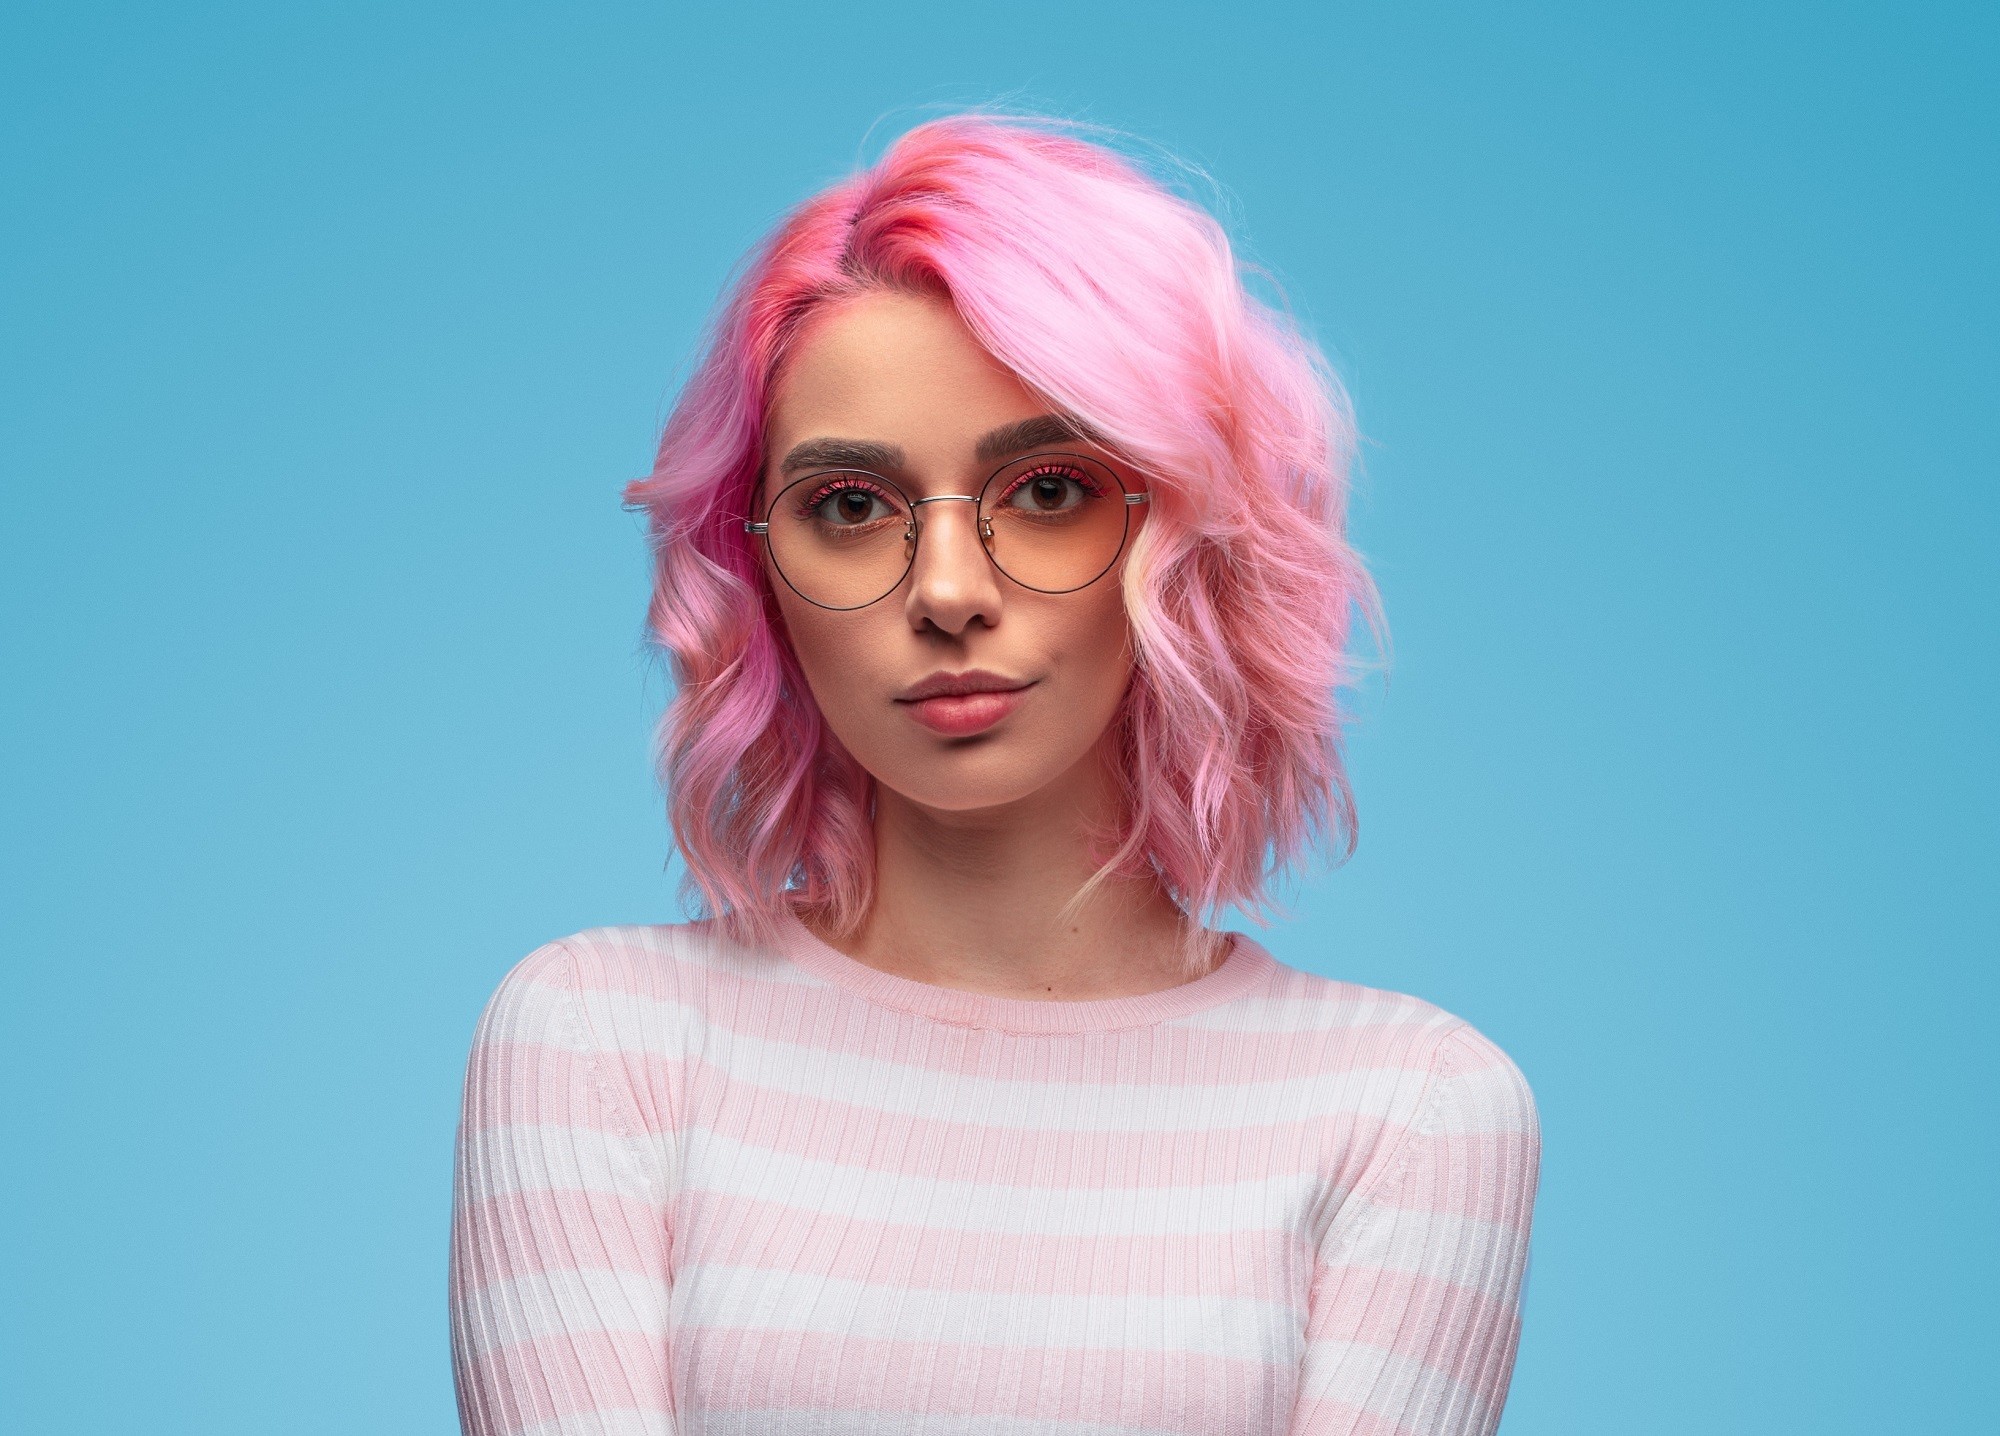 Bob ondulé : gros plan d'une fille avec un bob rose ondulé portant des lunettes et des manches longues à rayures blanches et roses